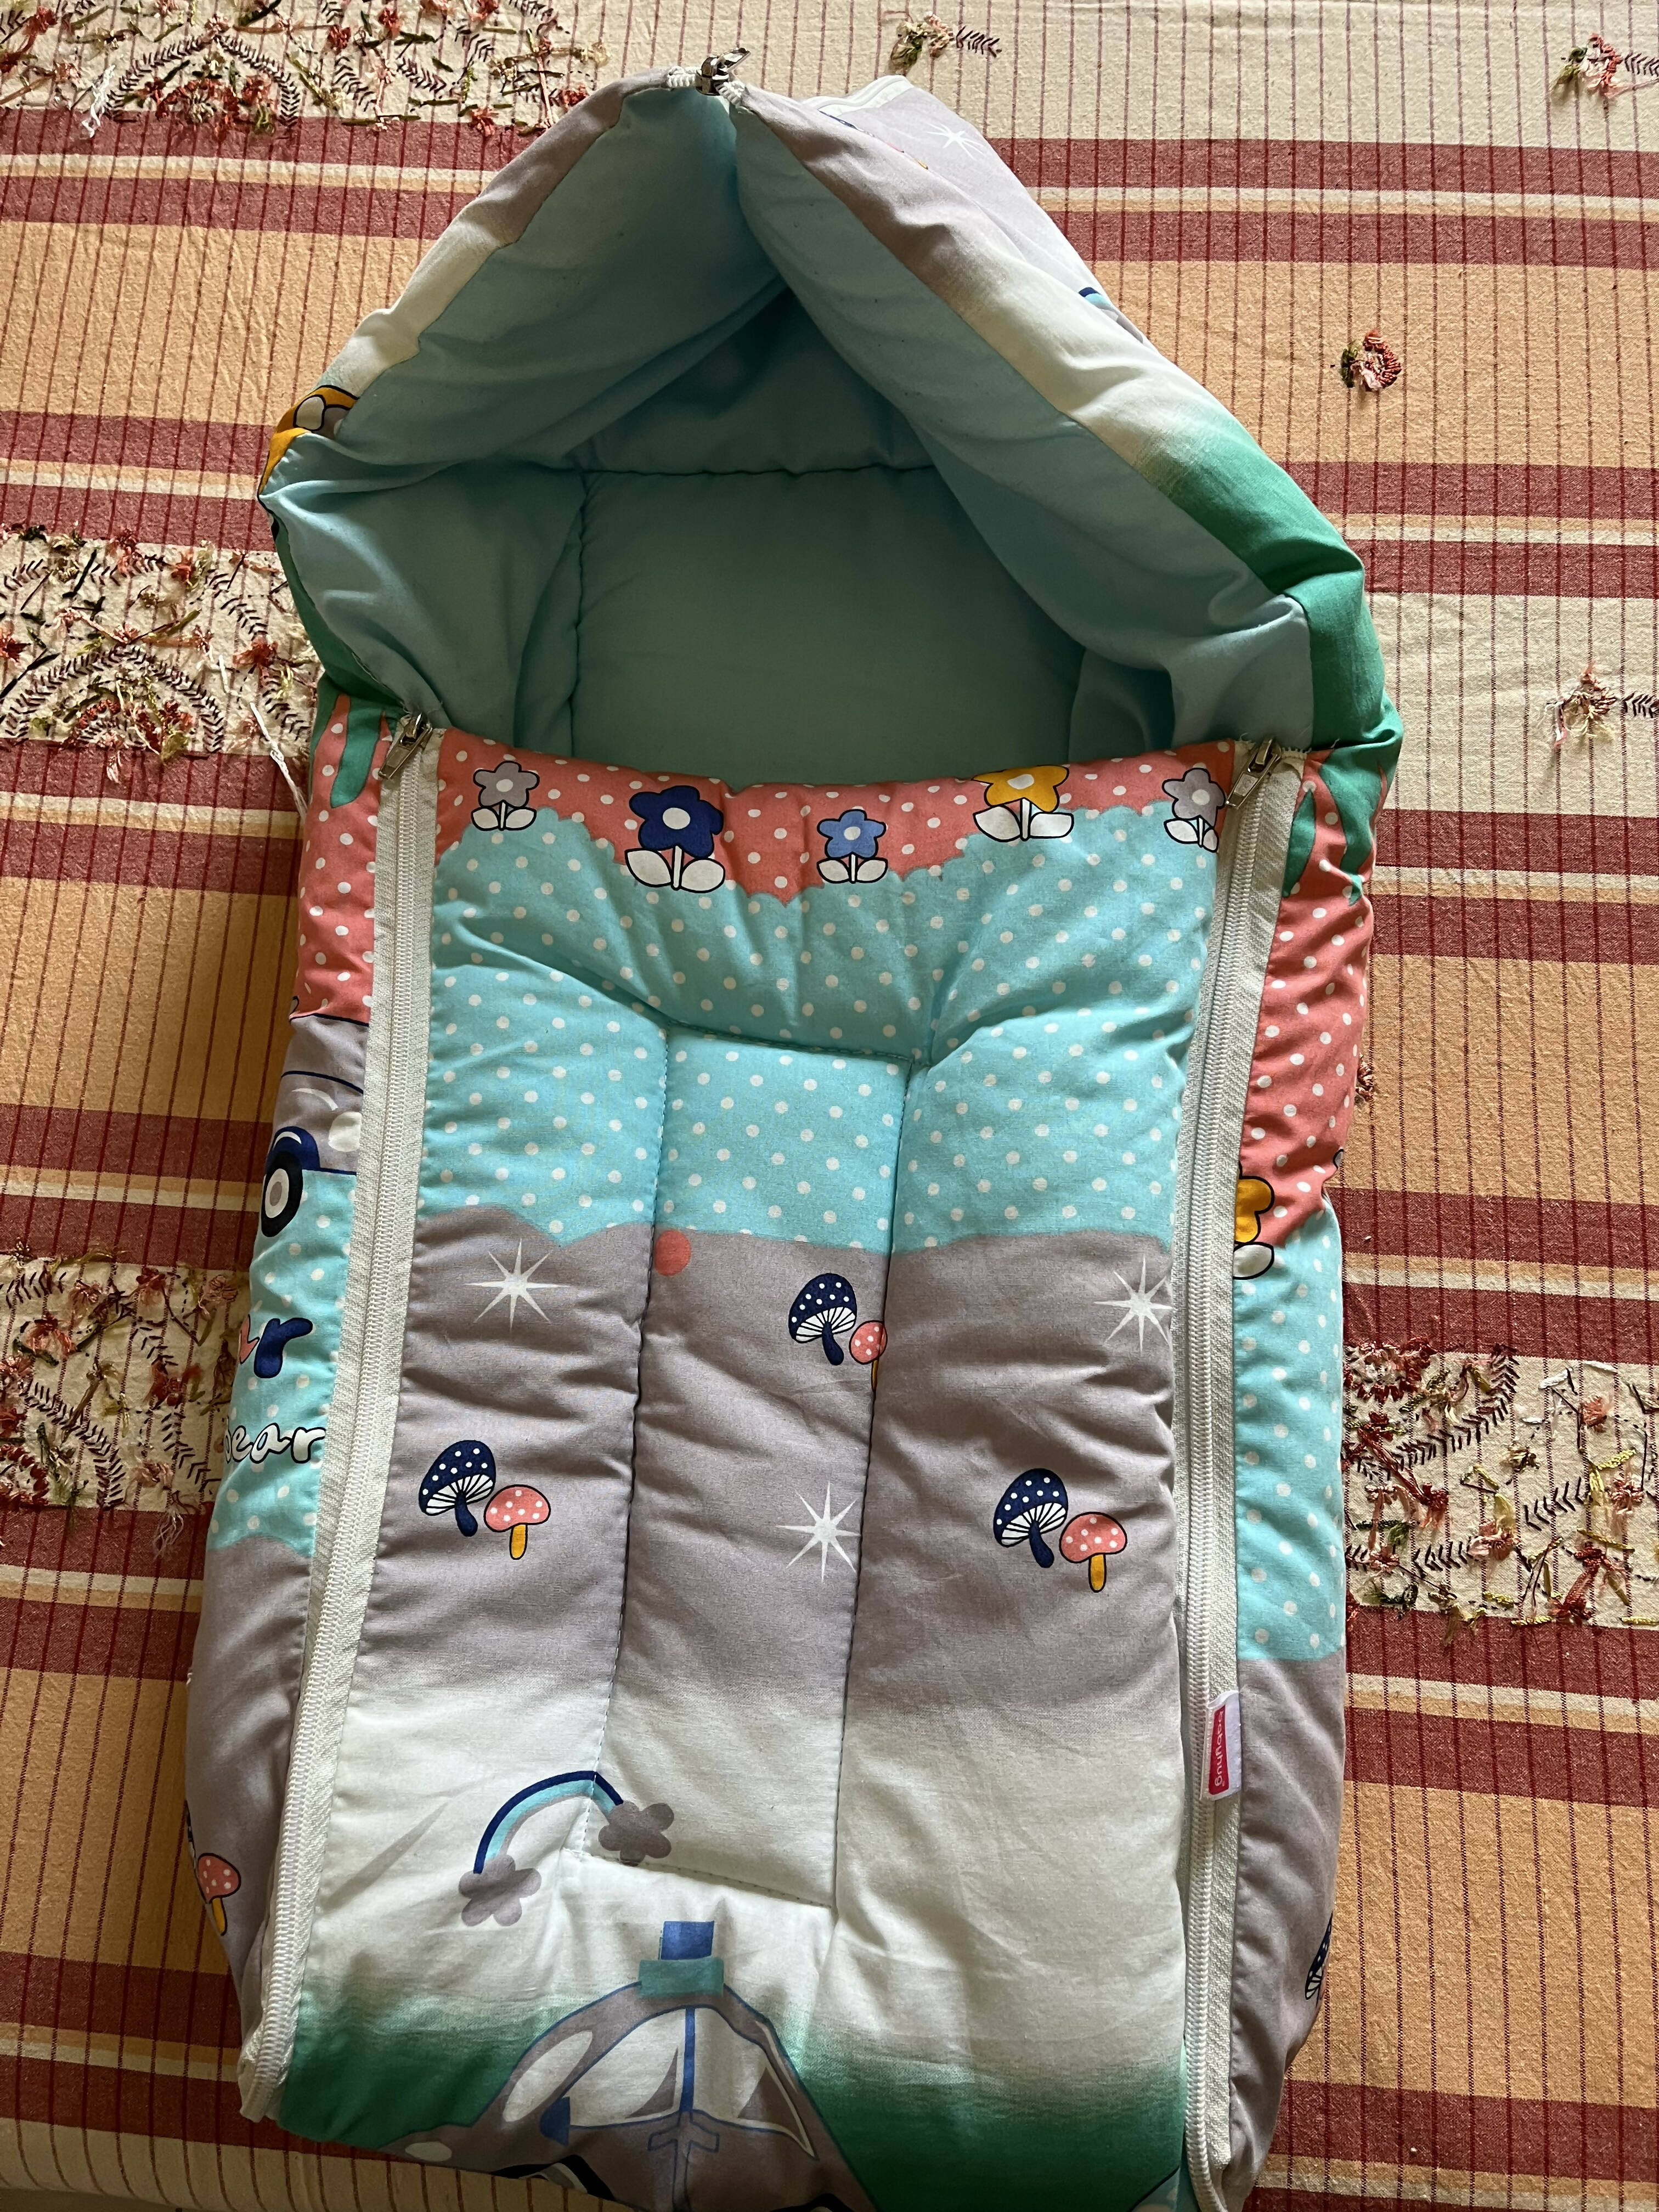 Babyhug Sleeping bag/Nest